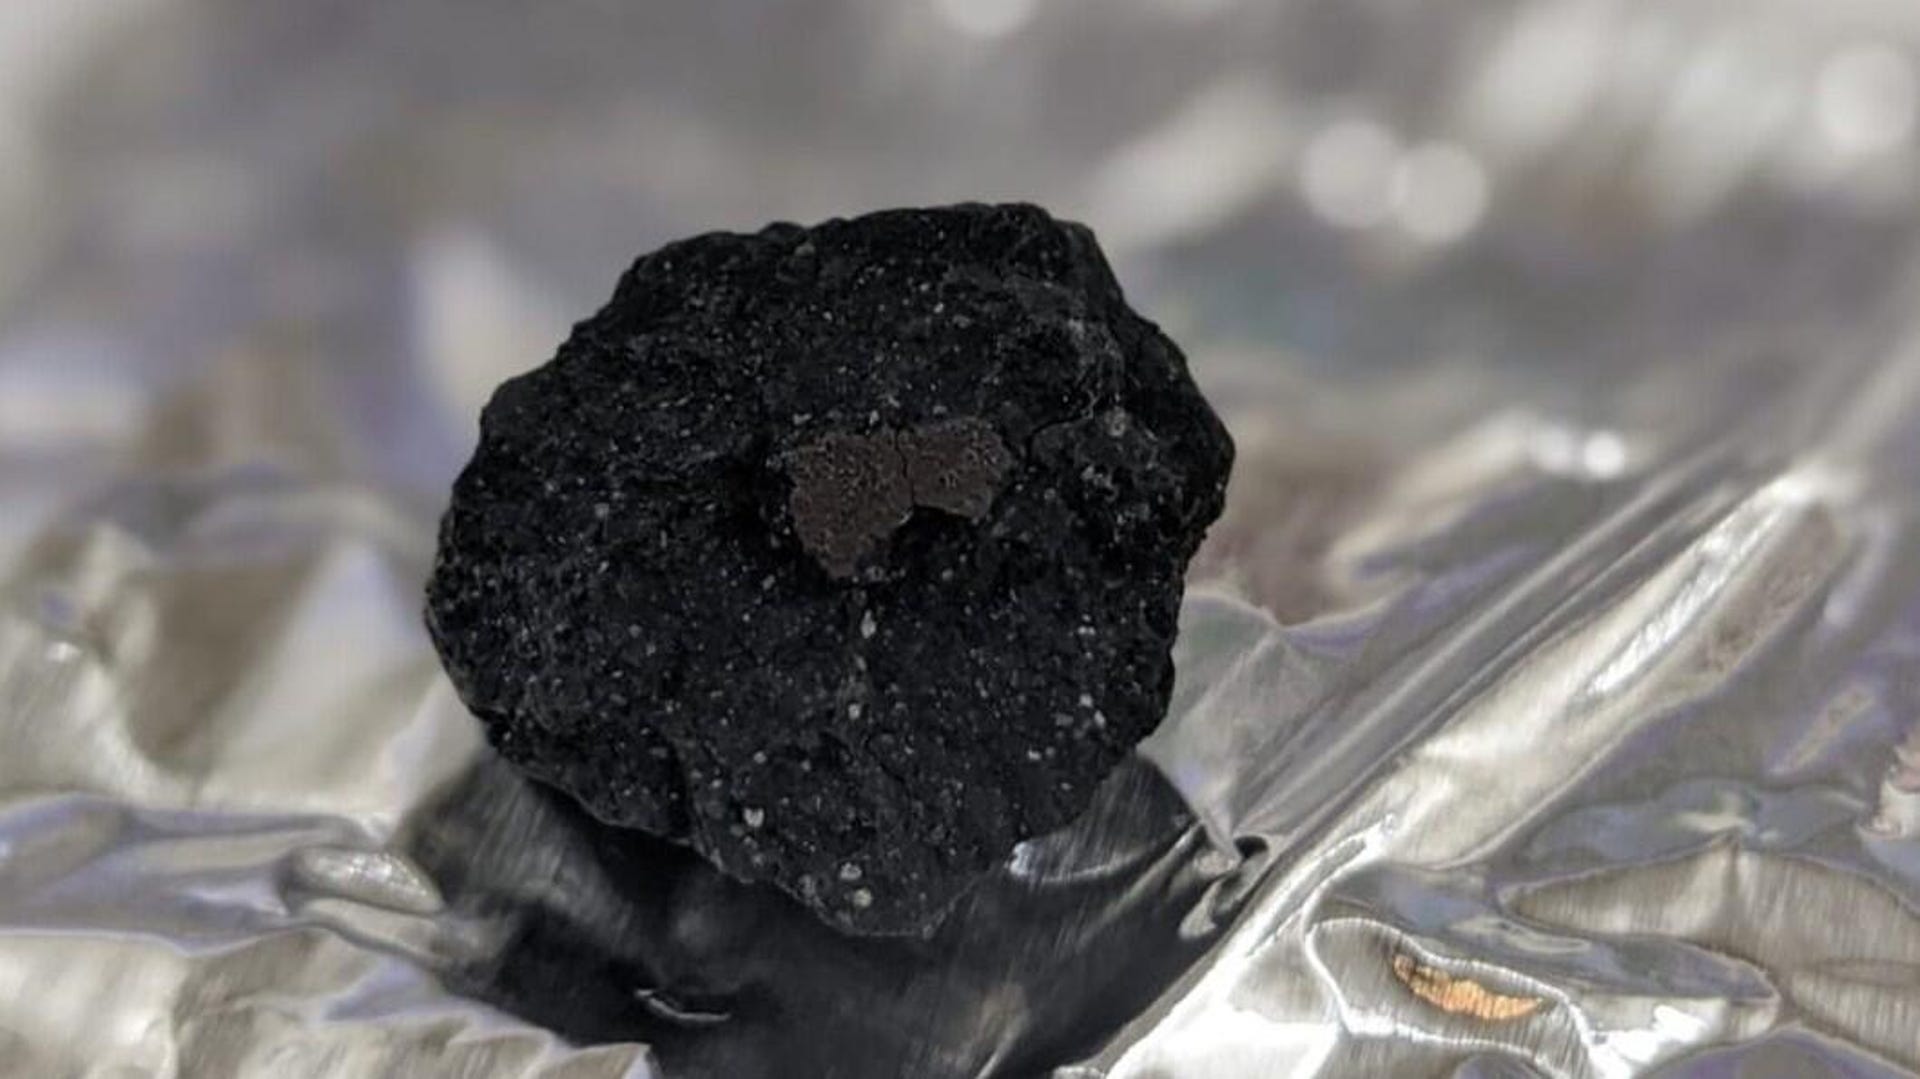 uk-meteorite-close-up-full-width